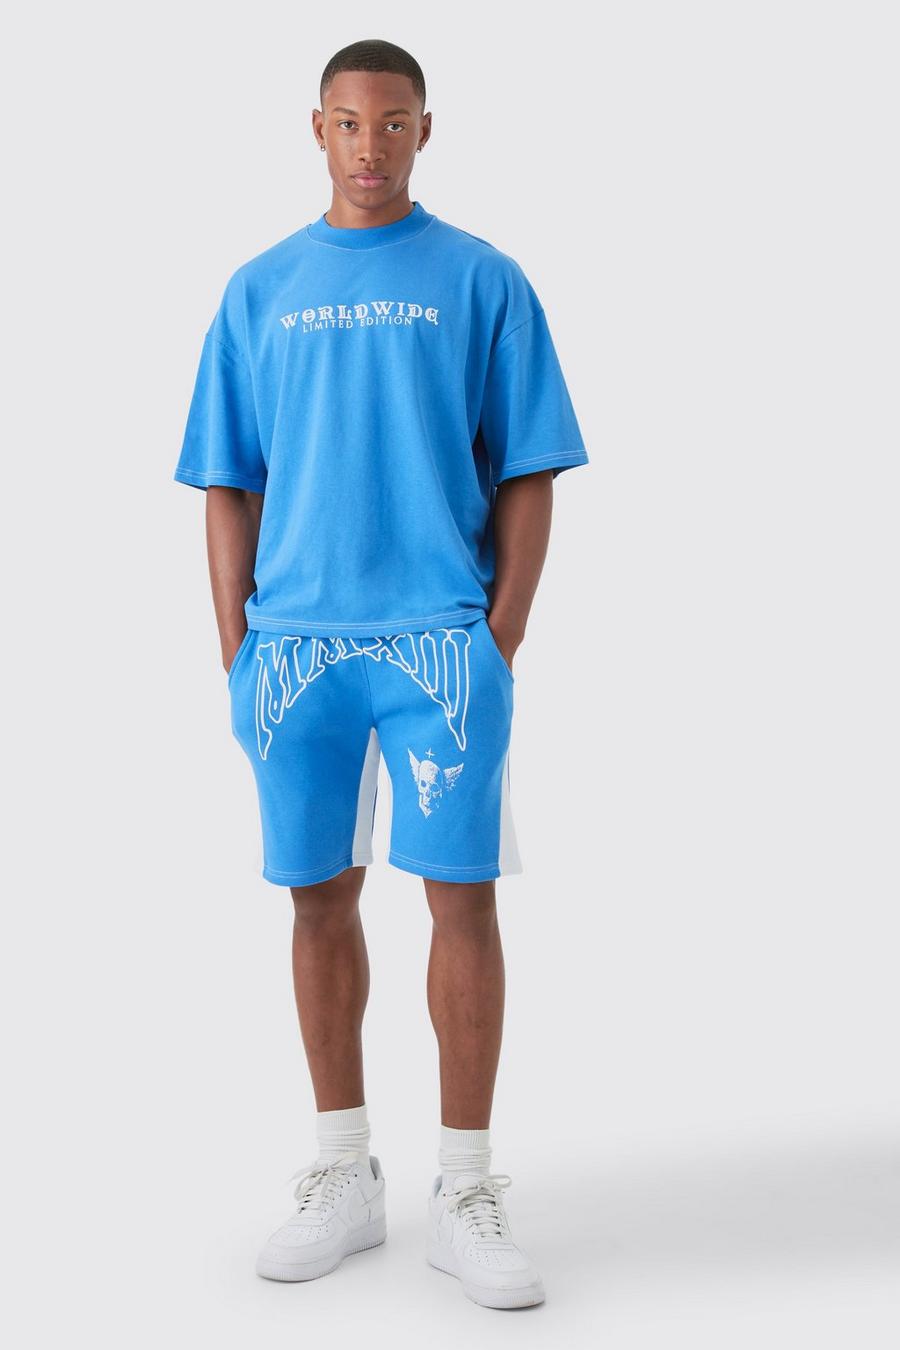 Kastiges Oversize T-Shirt mit Kontrast-Naht & Shorts, Blue